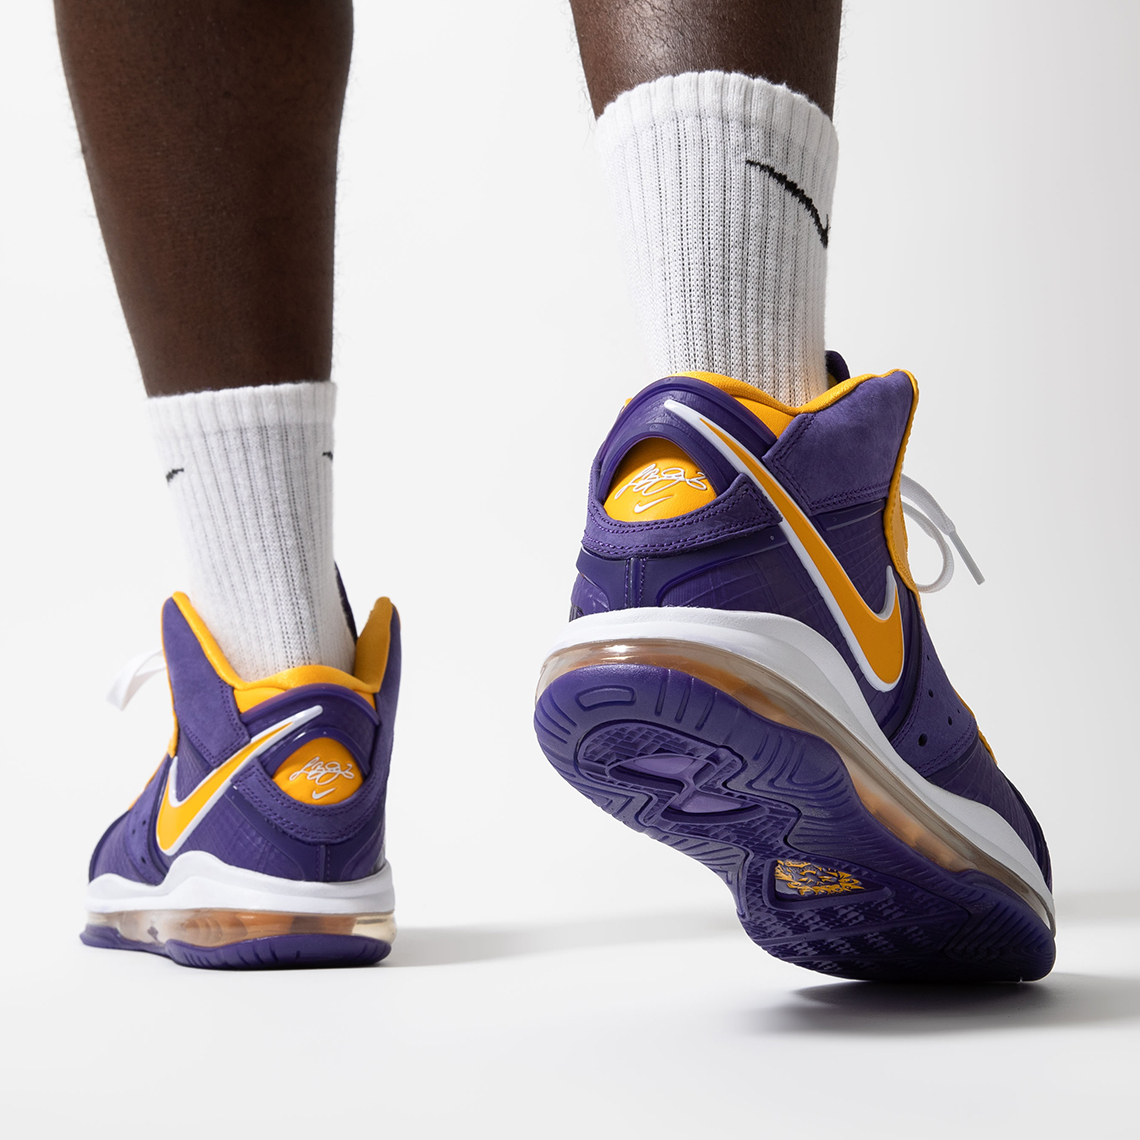 Nike Kobe 11 "Easter"